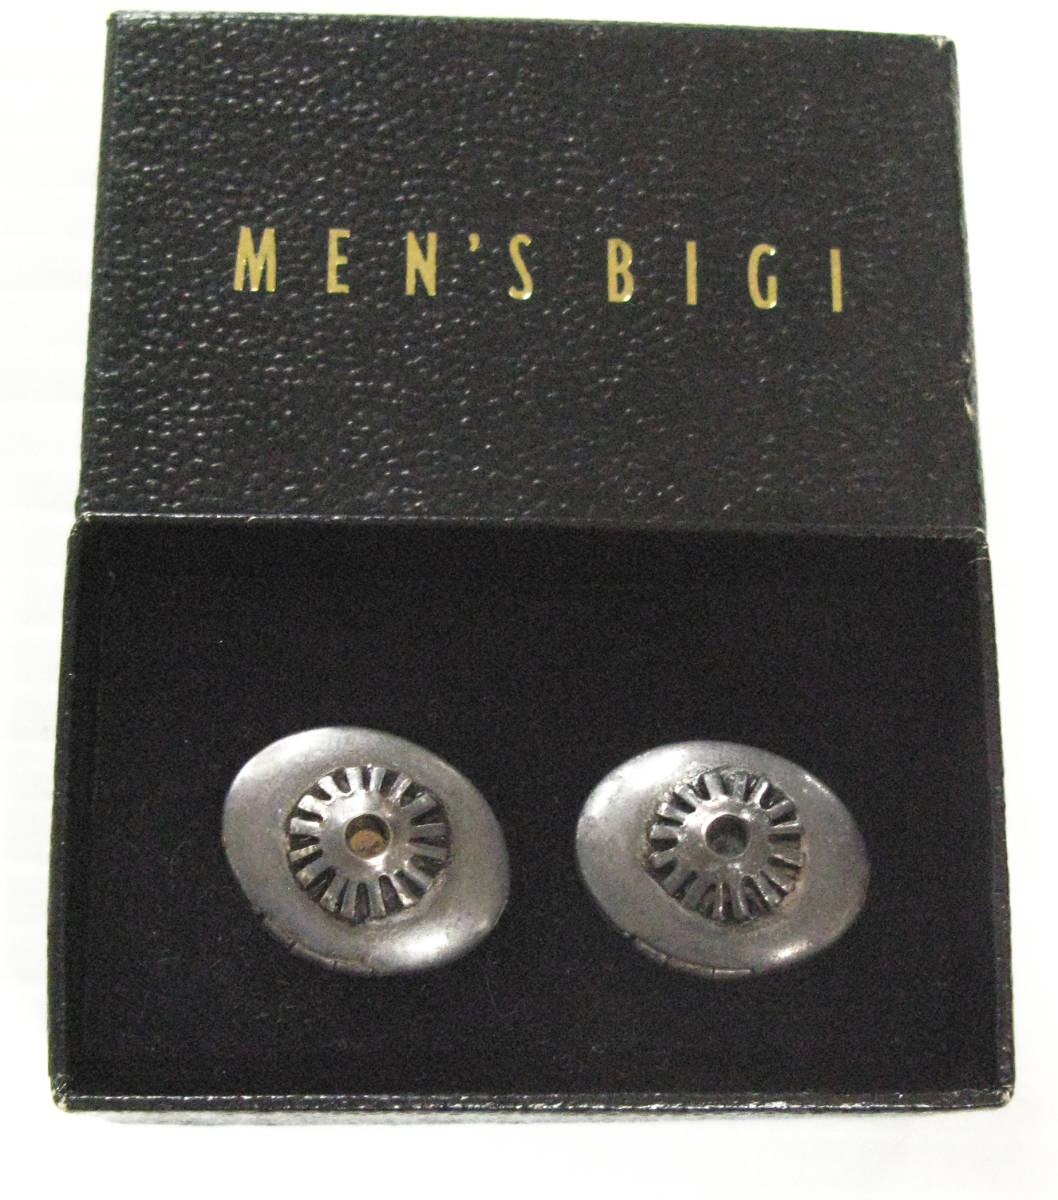 送料無料 メンズビギ MEN'S BIGI：カフスボタン （ カフス 長袖シャツ MEN'S BIGI Cuff Button Cuff links_画像1